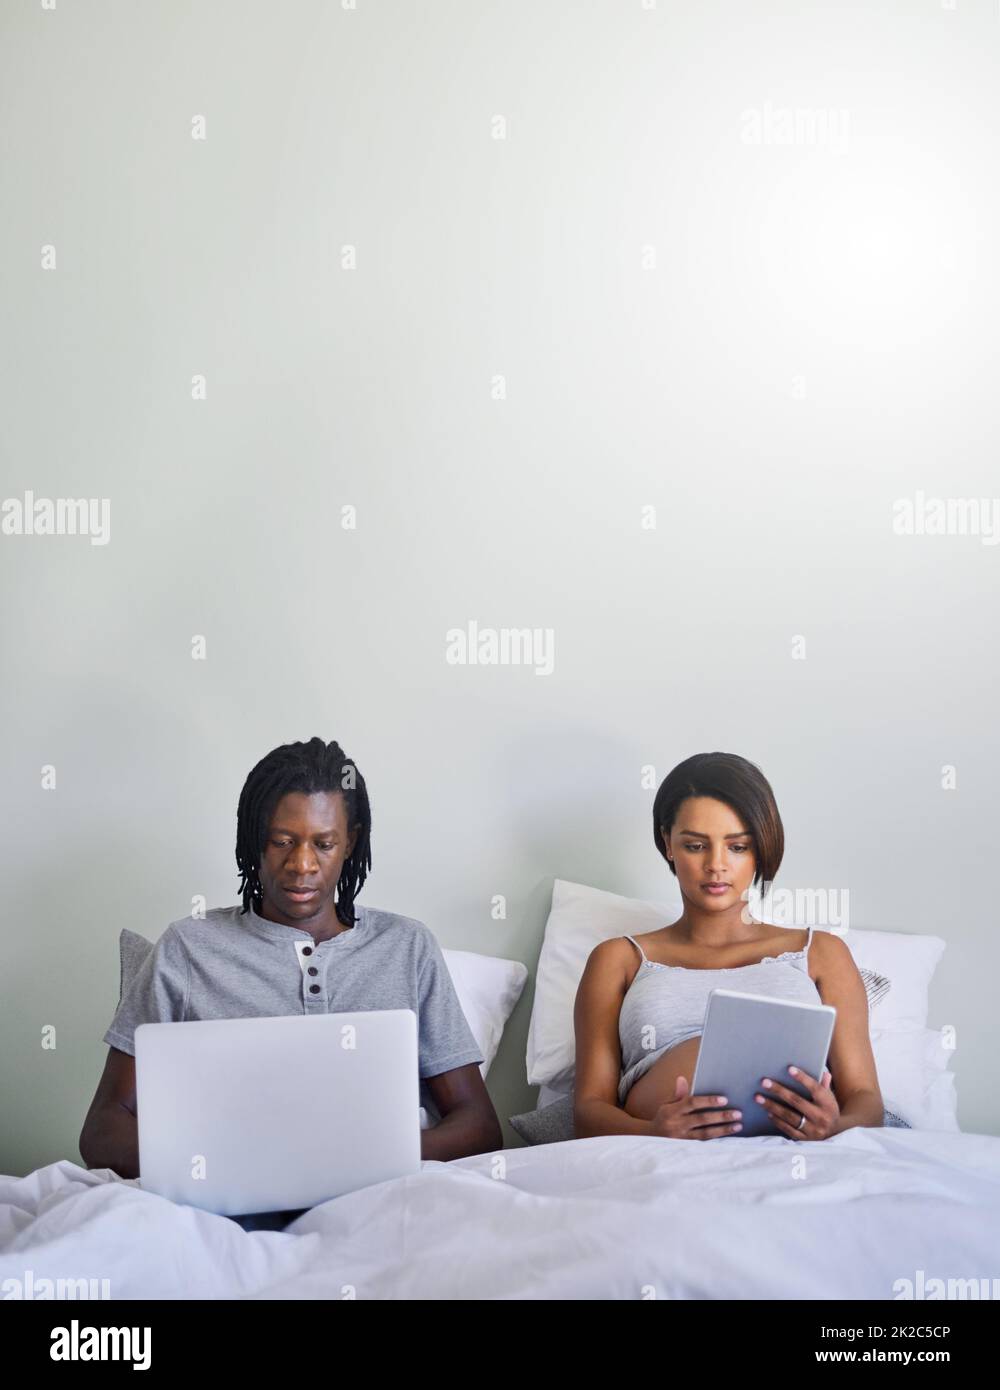 Glauben Sie nicht alles, was Sie online lesen. Aufnahme eines Paares, das im Bett sitzt, während es drahtlose Geräte verwendet. Stockfoto